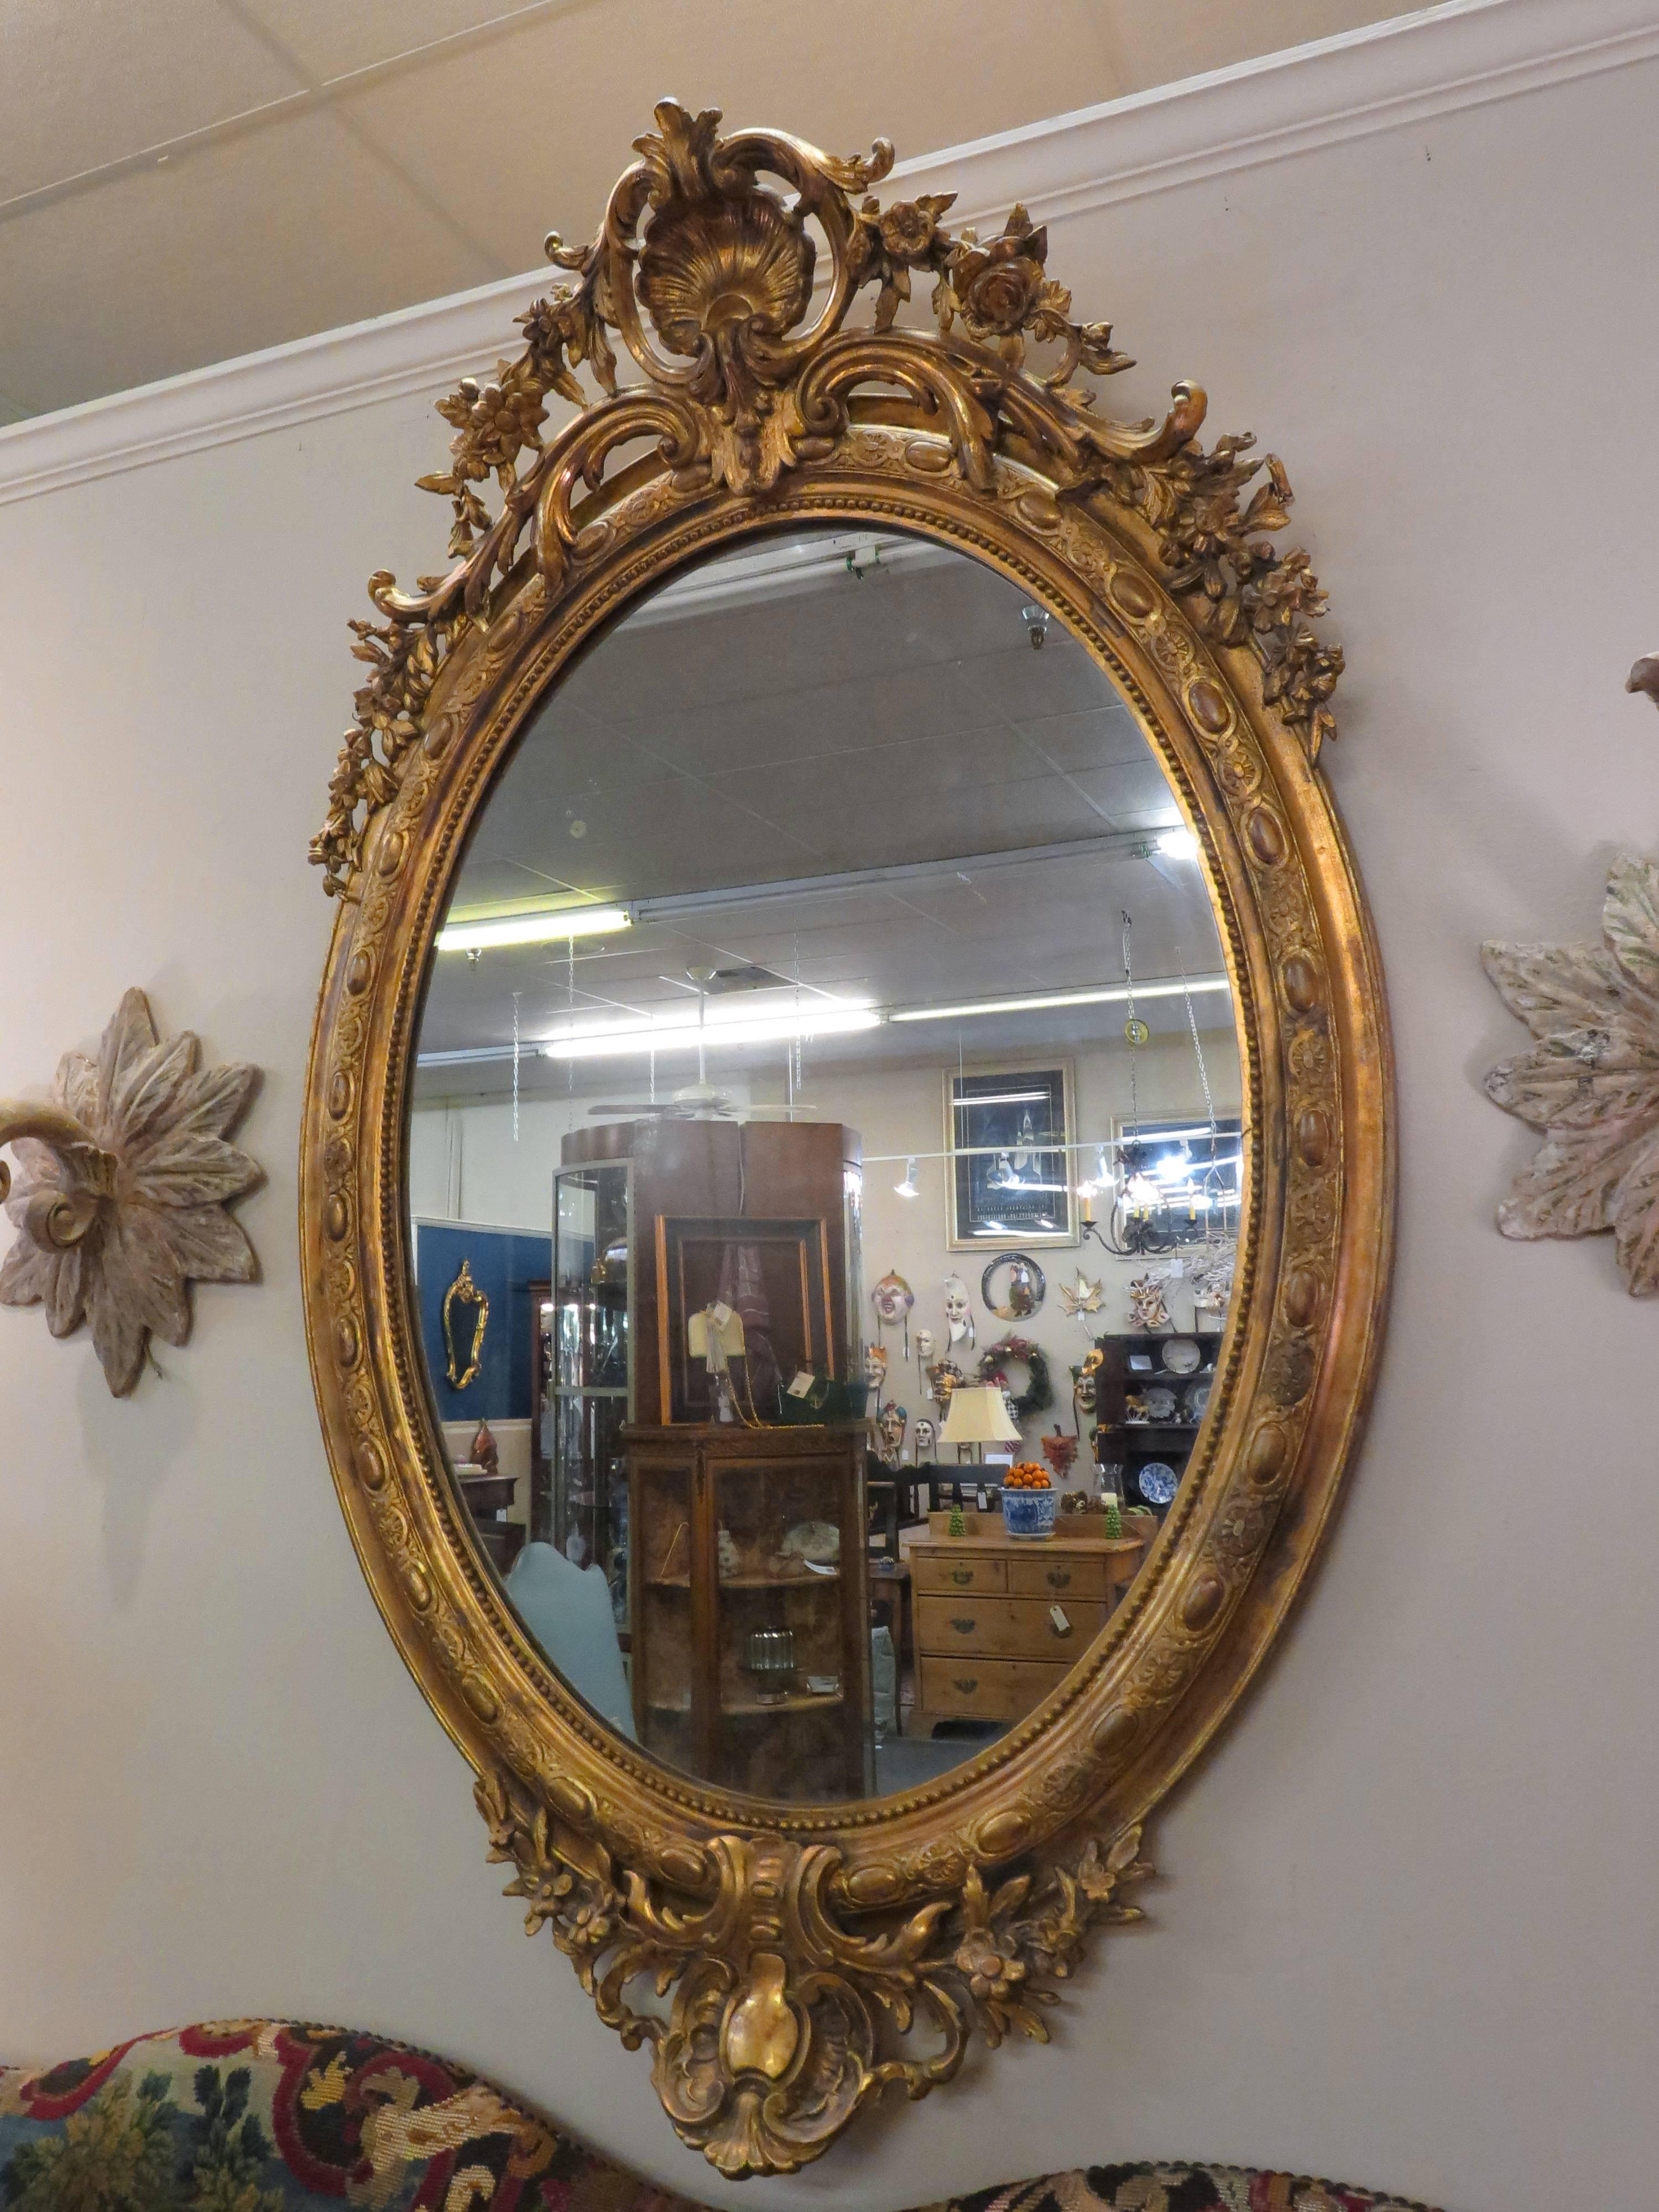 Fin du XIXe siècle, vers 1870. Le miroir présente une crête à volutes percées, flanquée de guirlandes florales, avec une bordure sculptée en forme d'œuf et de fléchette et une autre base sculptée en forme de crête et de guirlande.